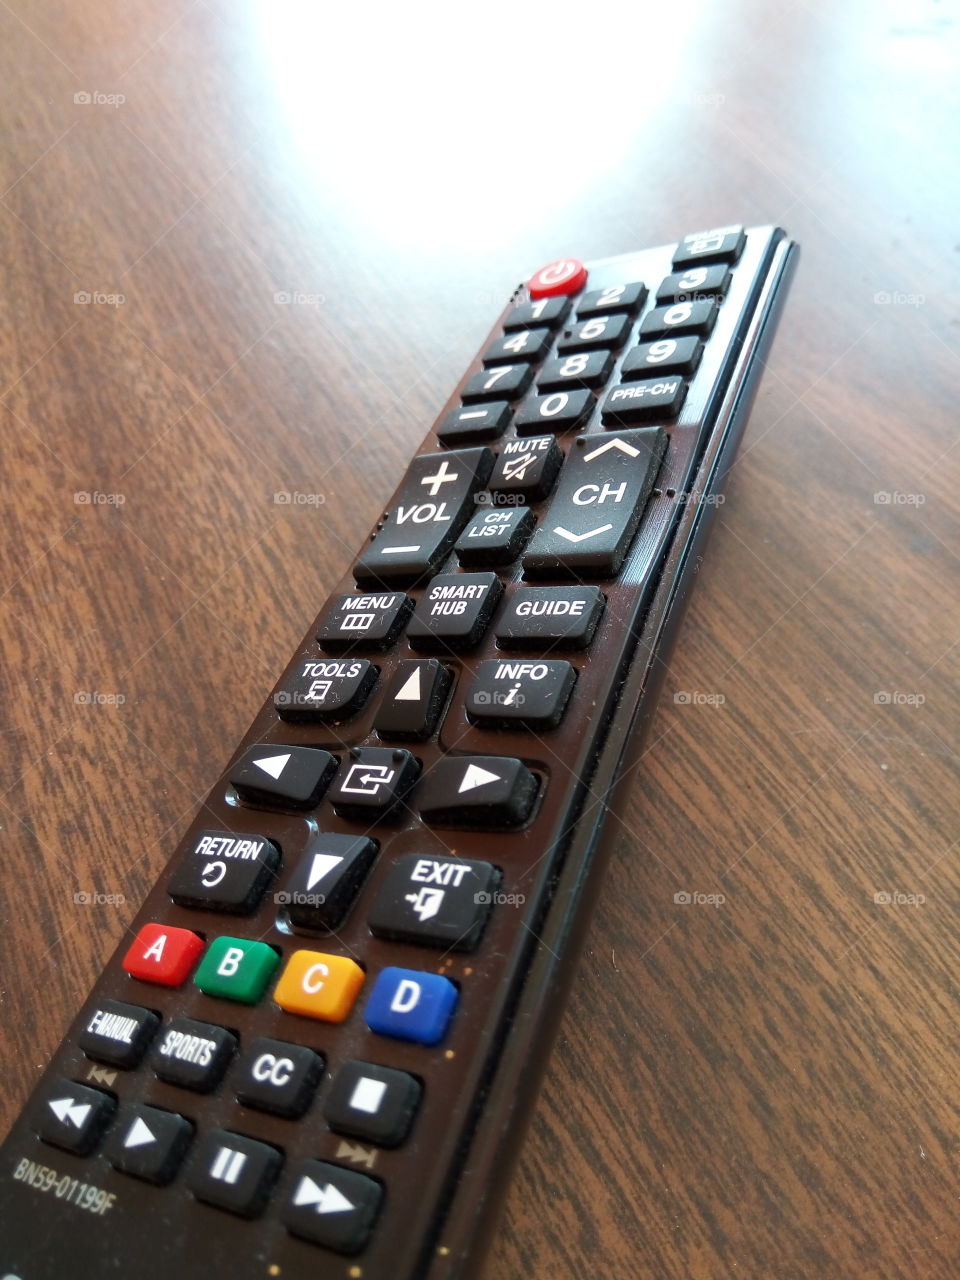 smart TV remote